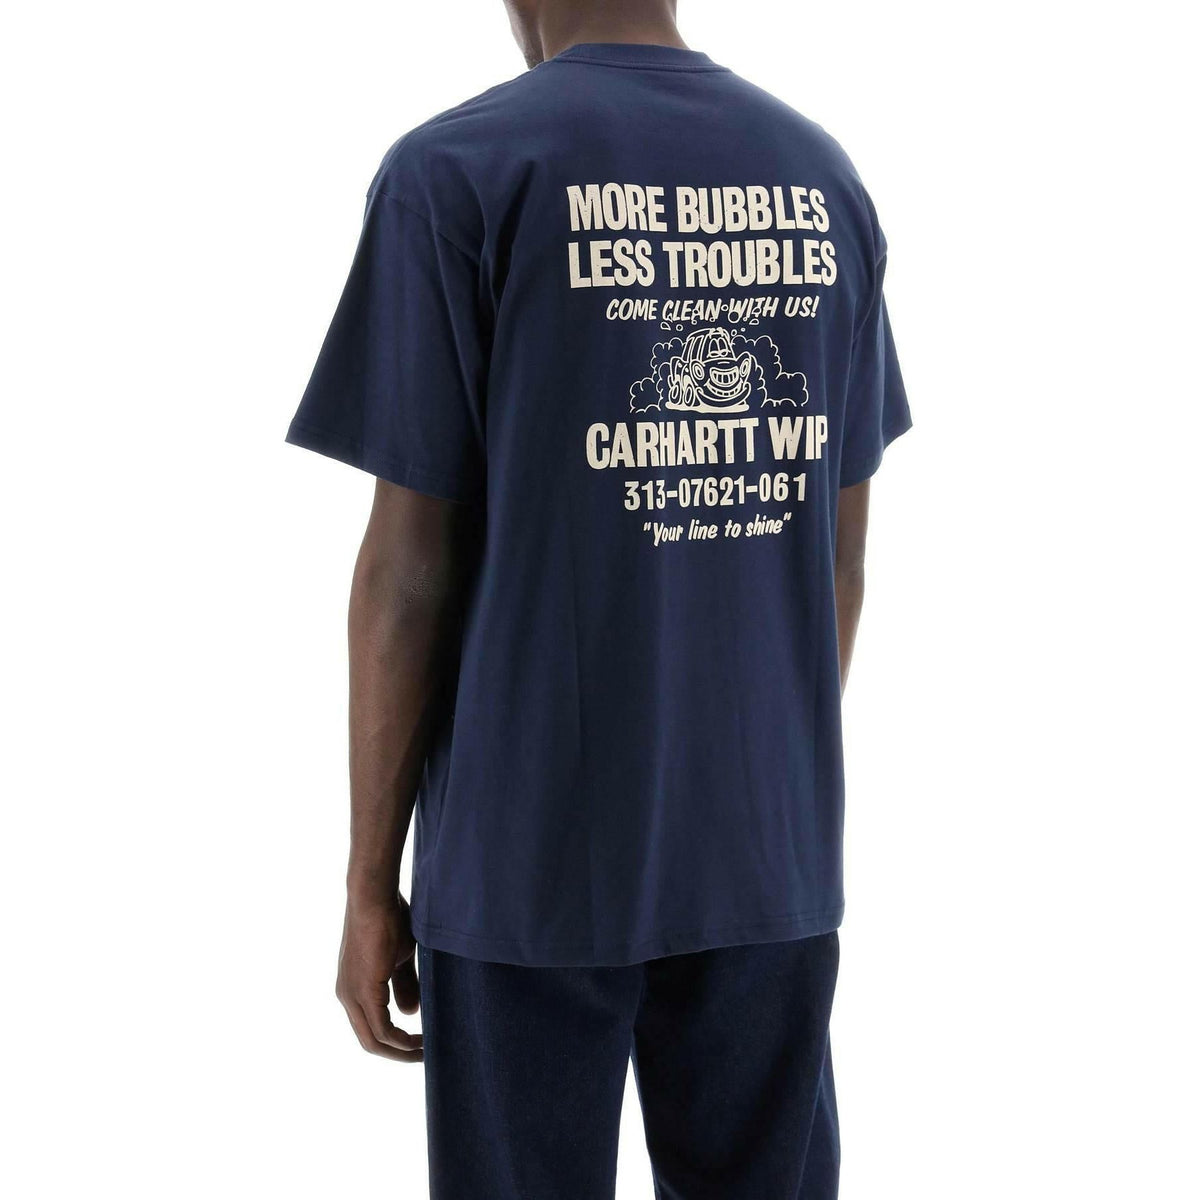 CARHARTT WIP - Organic Cotton Trouble Free T-Shirt - JOHN JULIA